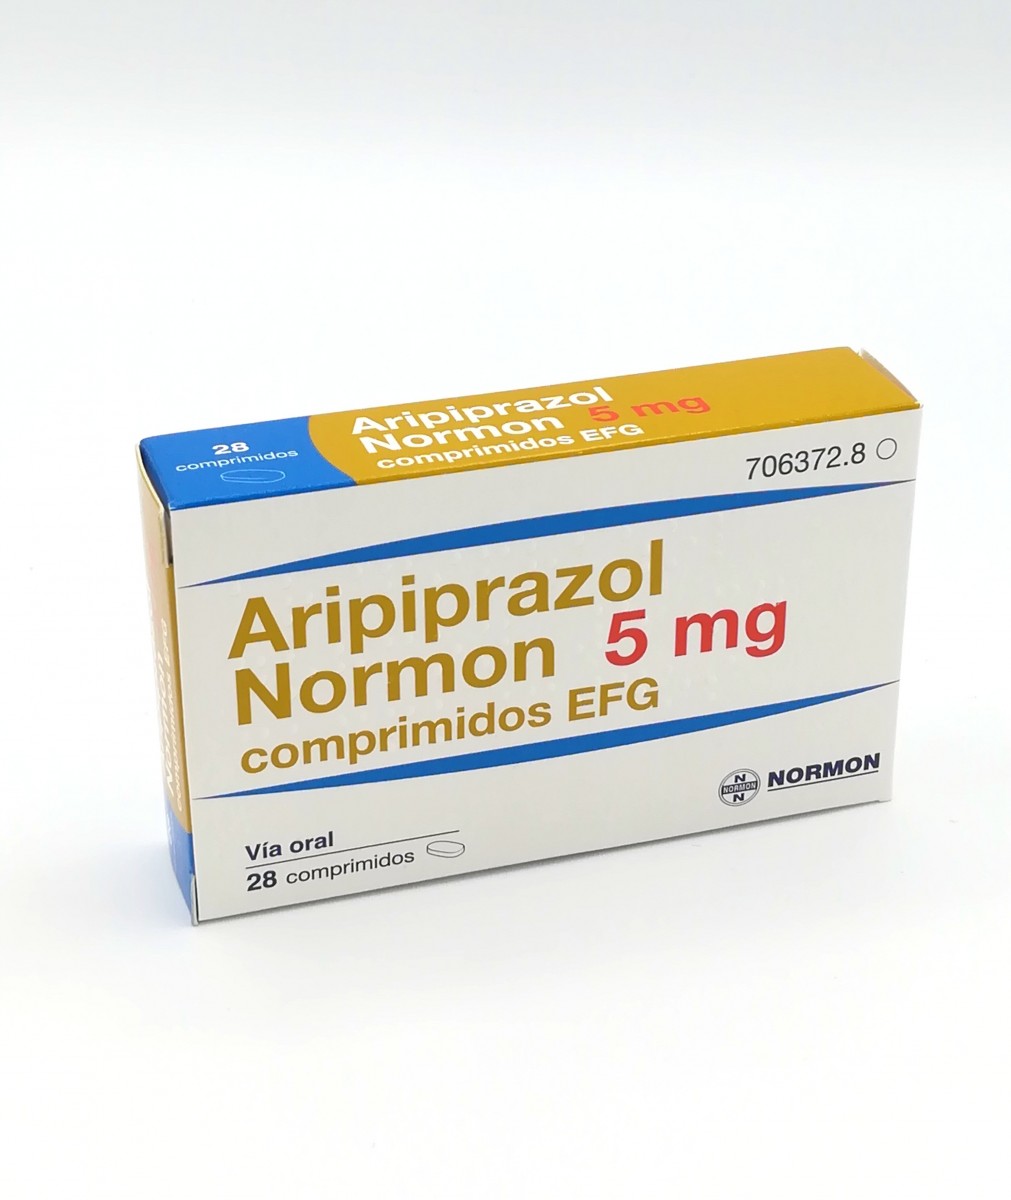 ARIPIPRAZOL NORMON 5 MG COMPRIMIDOS EFG , 100 comprimidos fotografía del envase.